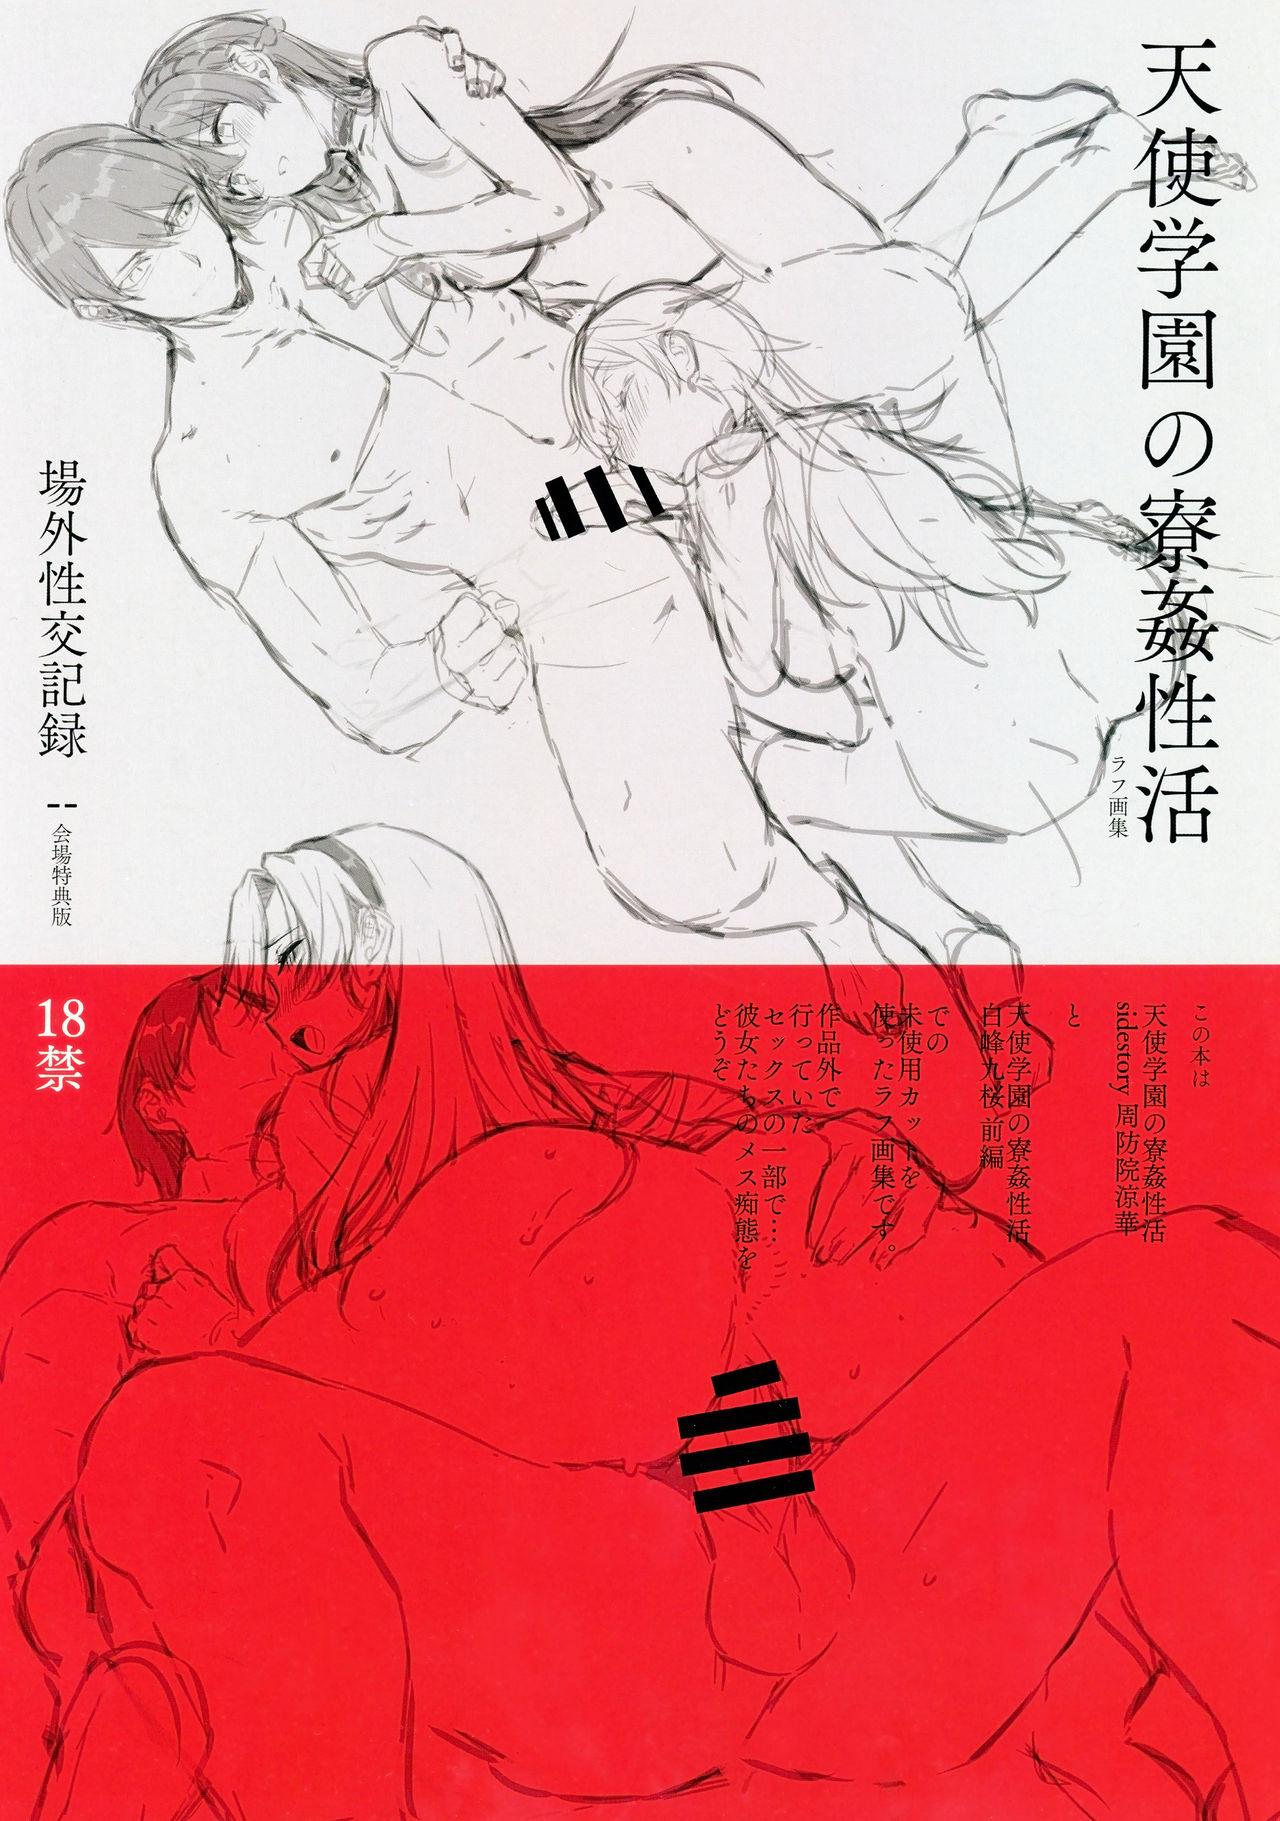 Amatsuka Gakuen no Ryoukan Seikatsu Jougai Seikou Kiroku file05-06 0